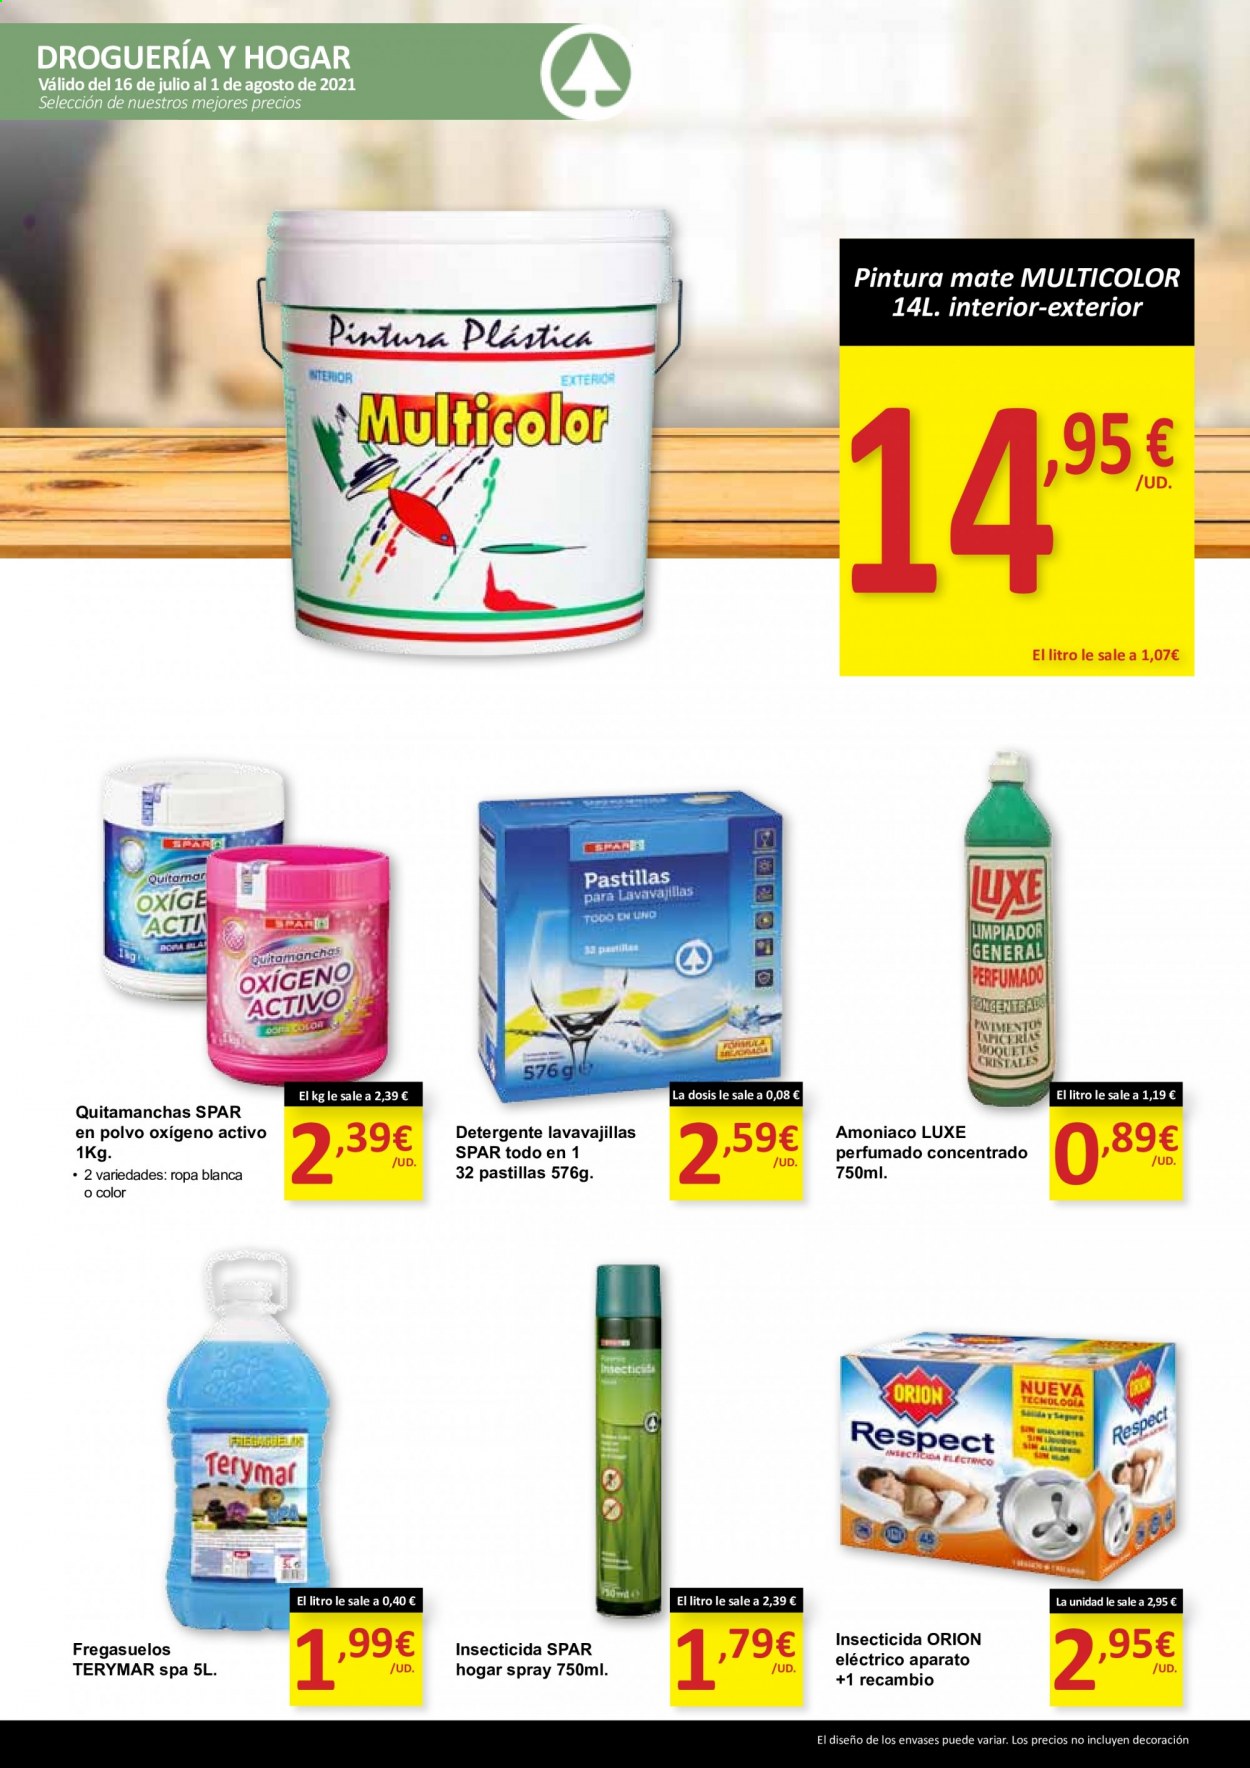 thumbnail - Folleto actual SPAR - 16/07/21 - 01/08/21 - Ventas - detergente, quitamanchas, insecticida, lavavajillas. Página 9.